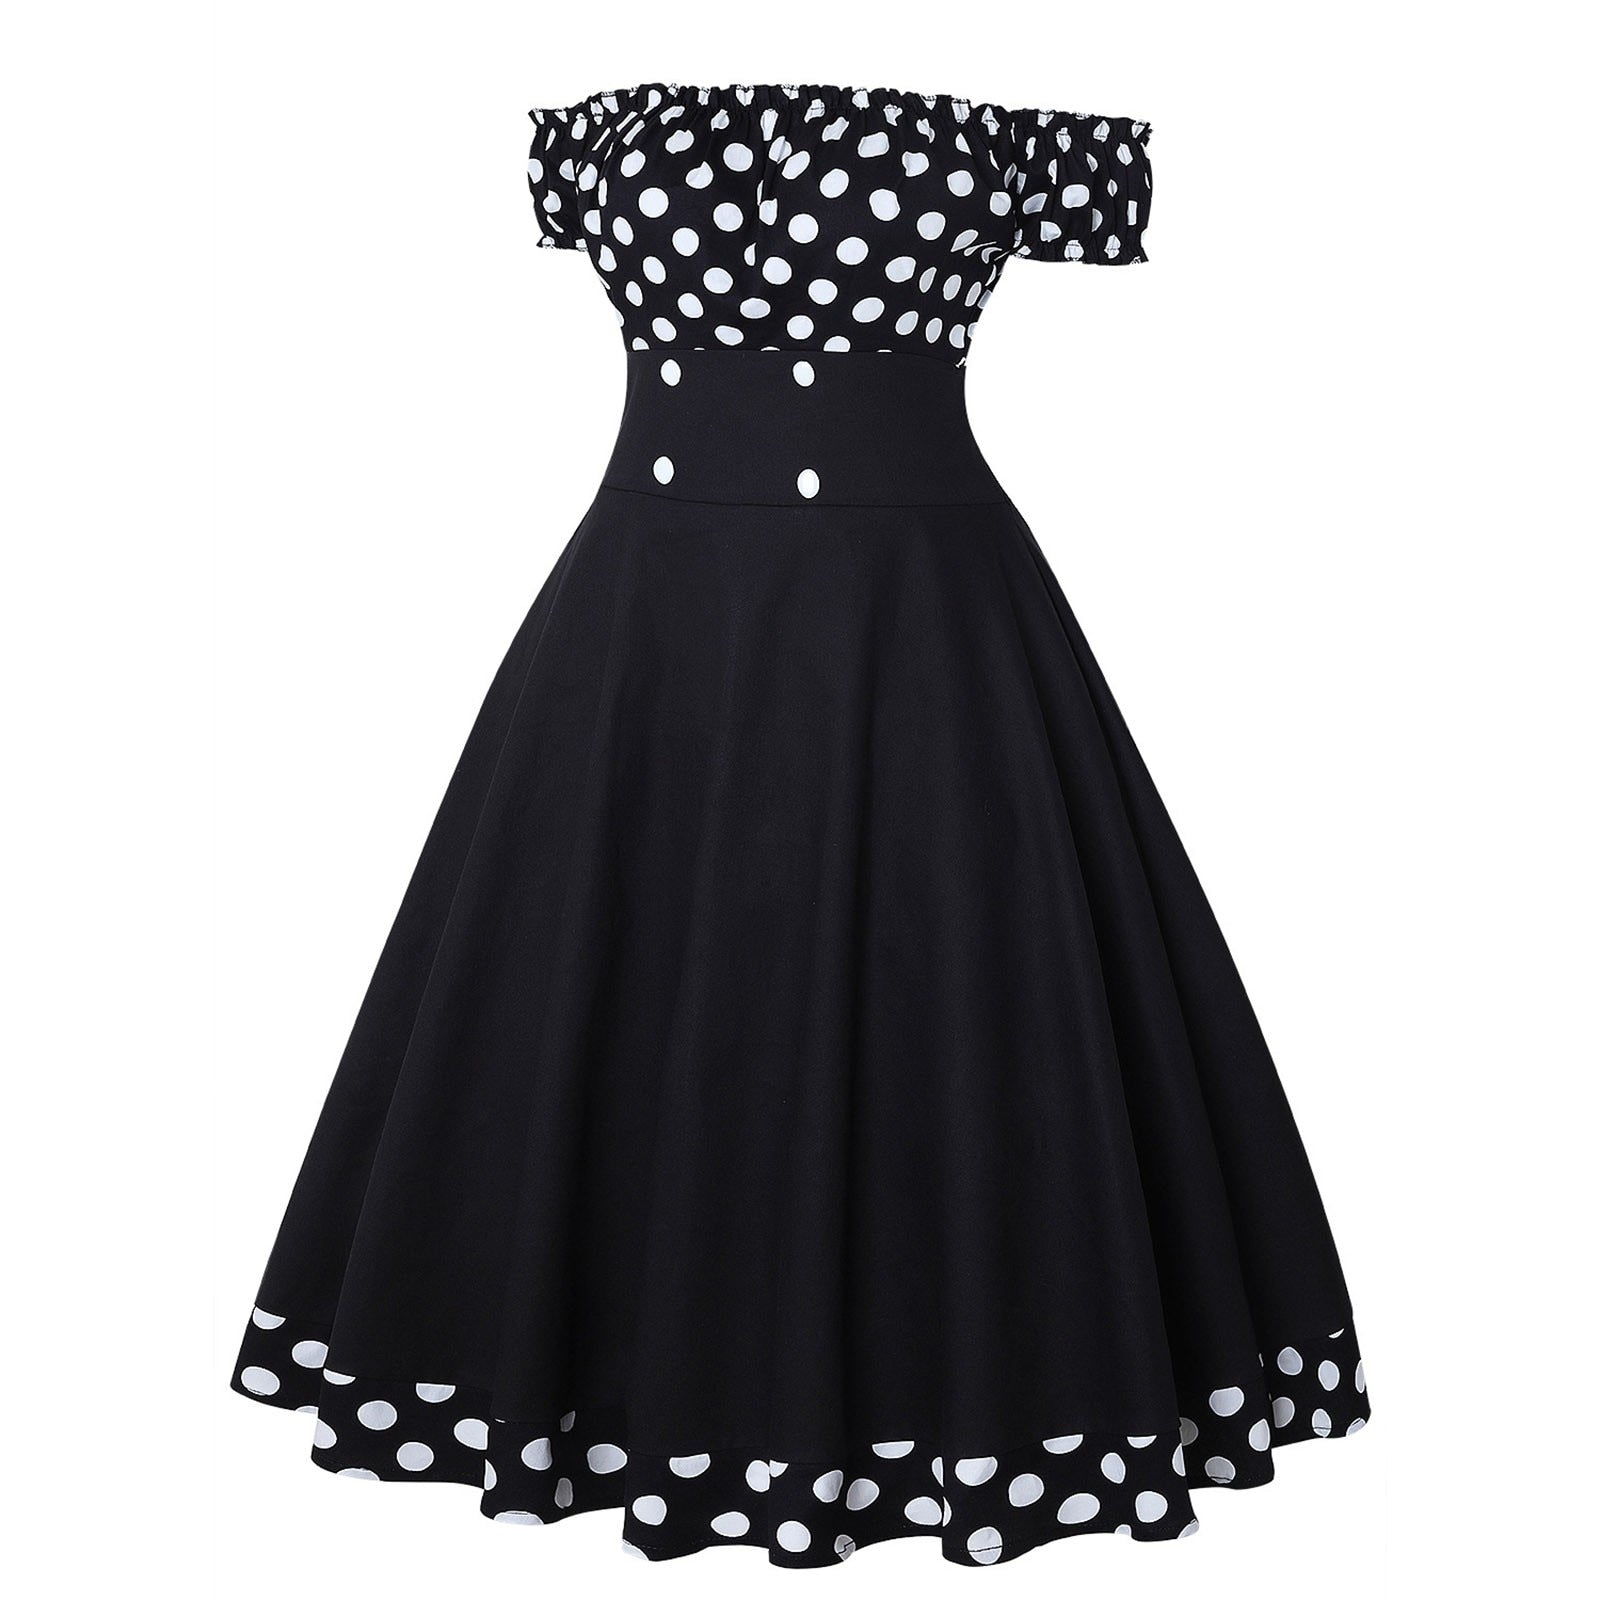 Elegant off-the-shoulder vintage A-line dress